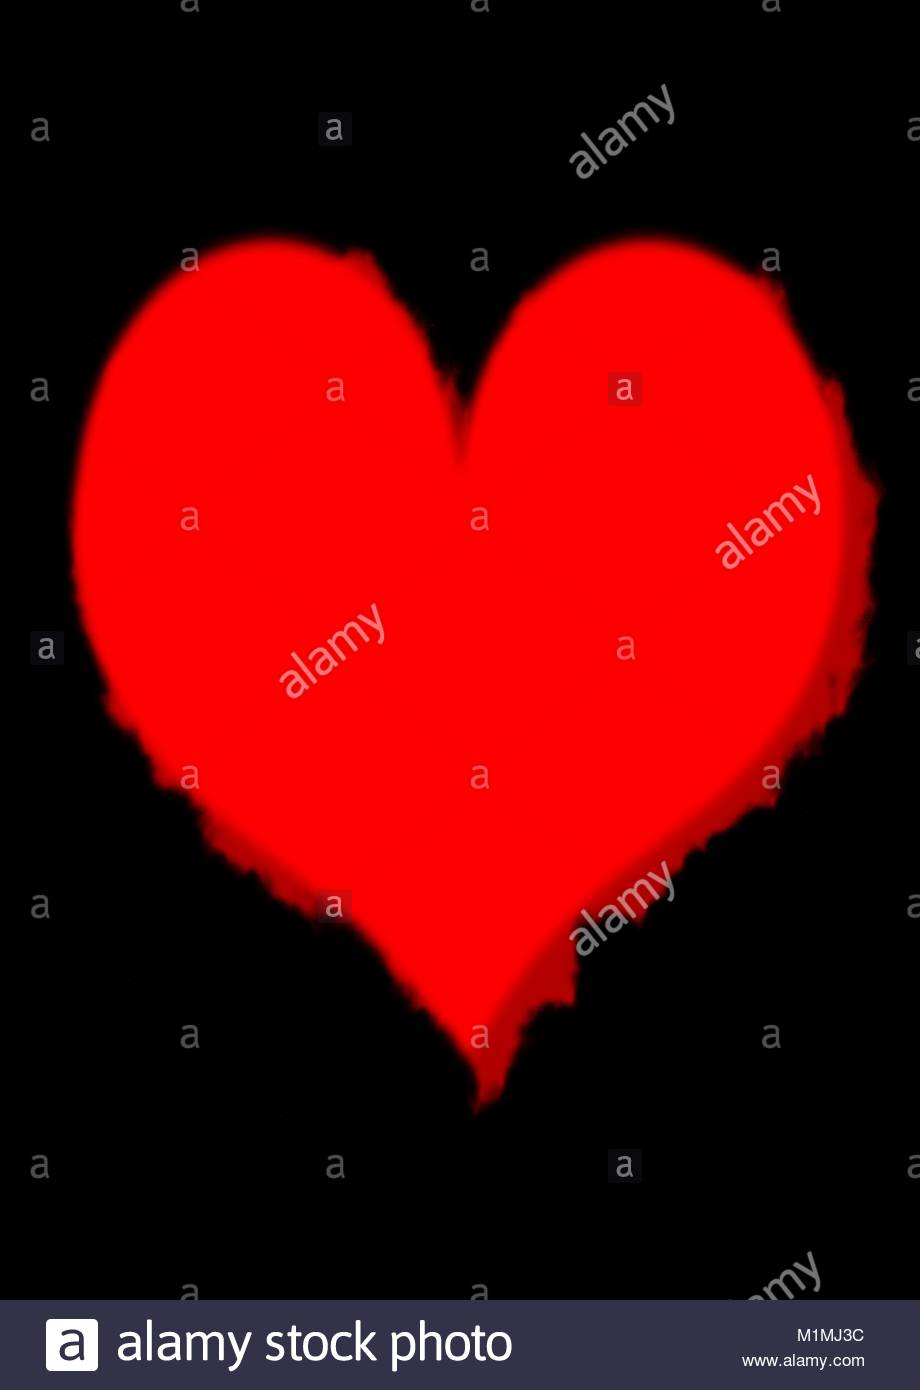 Spooky Red Bleeding Heart On Plain Black Background Stock Vector